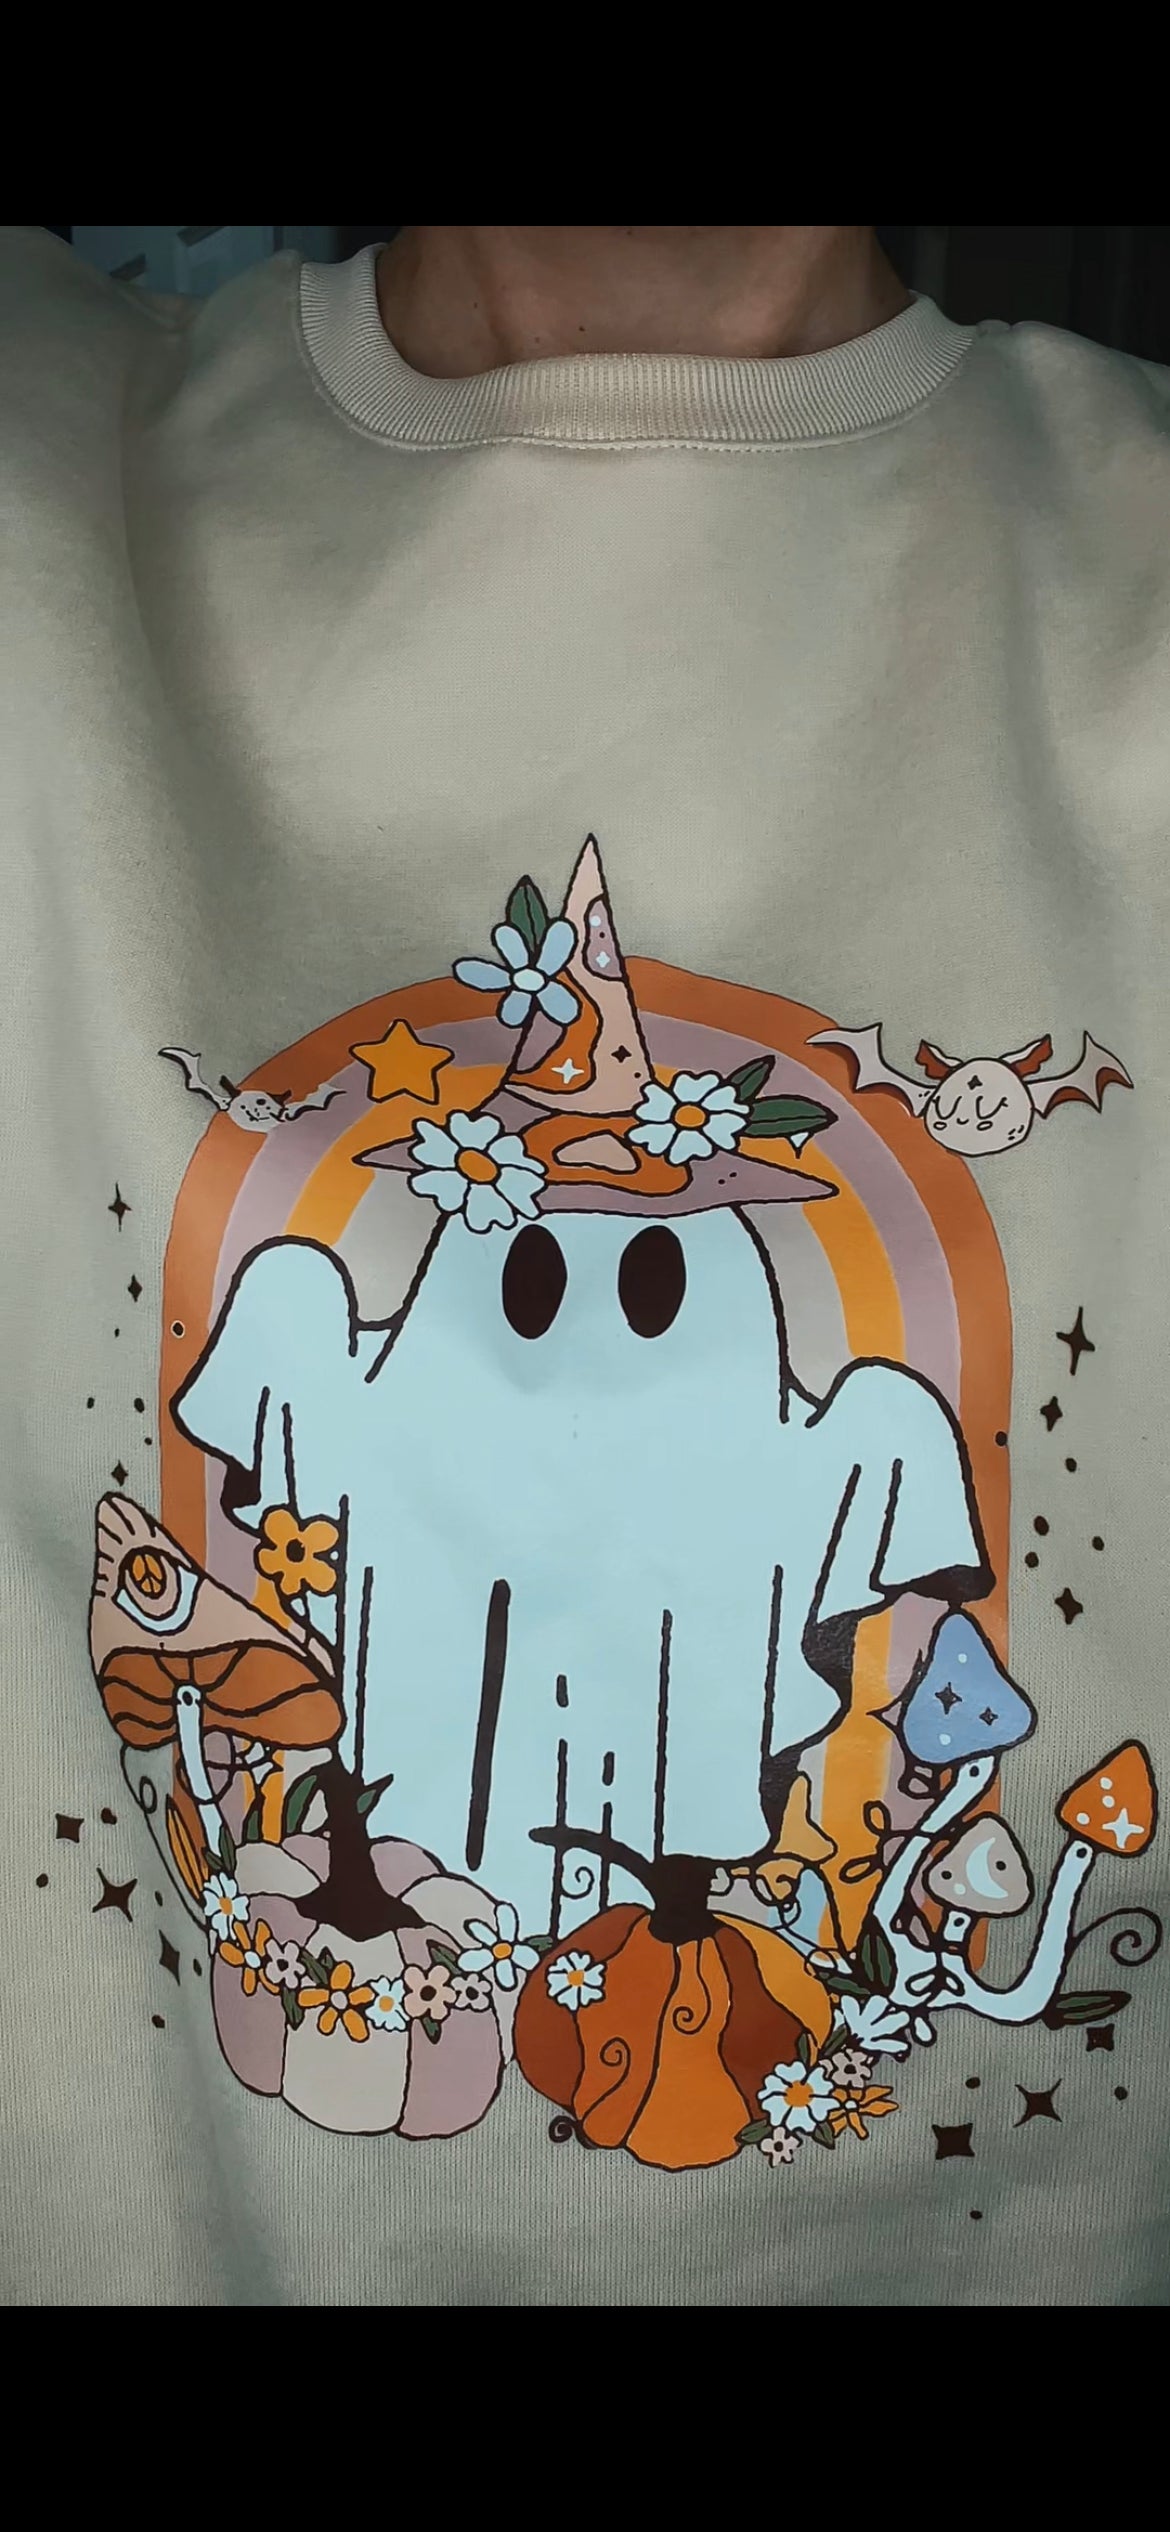 Happy Hippie Halloween Print Drop Shoulder Sweatshirt